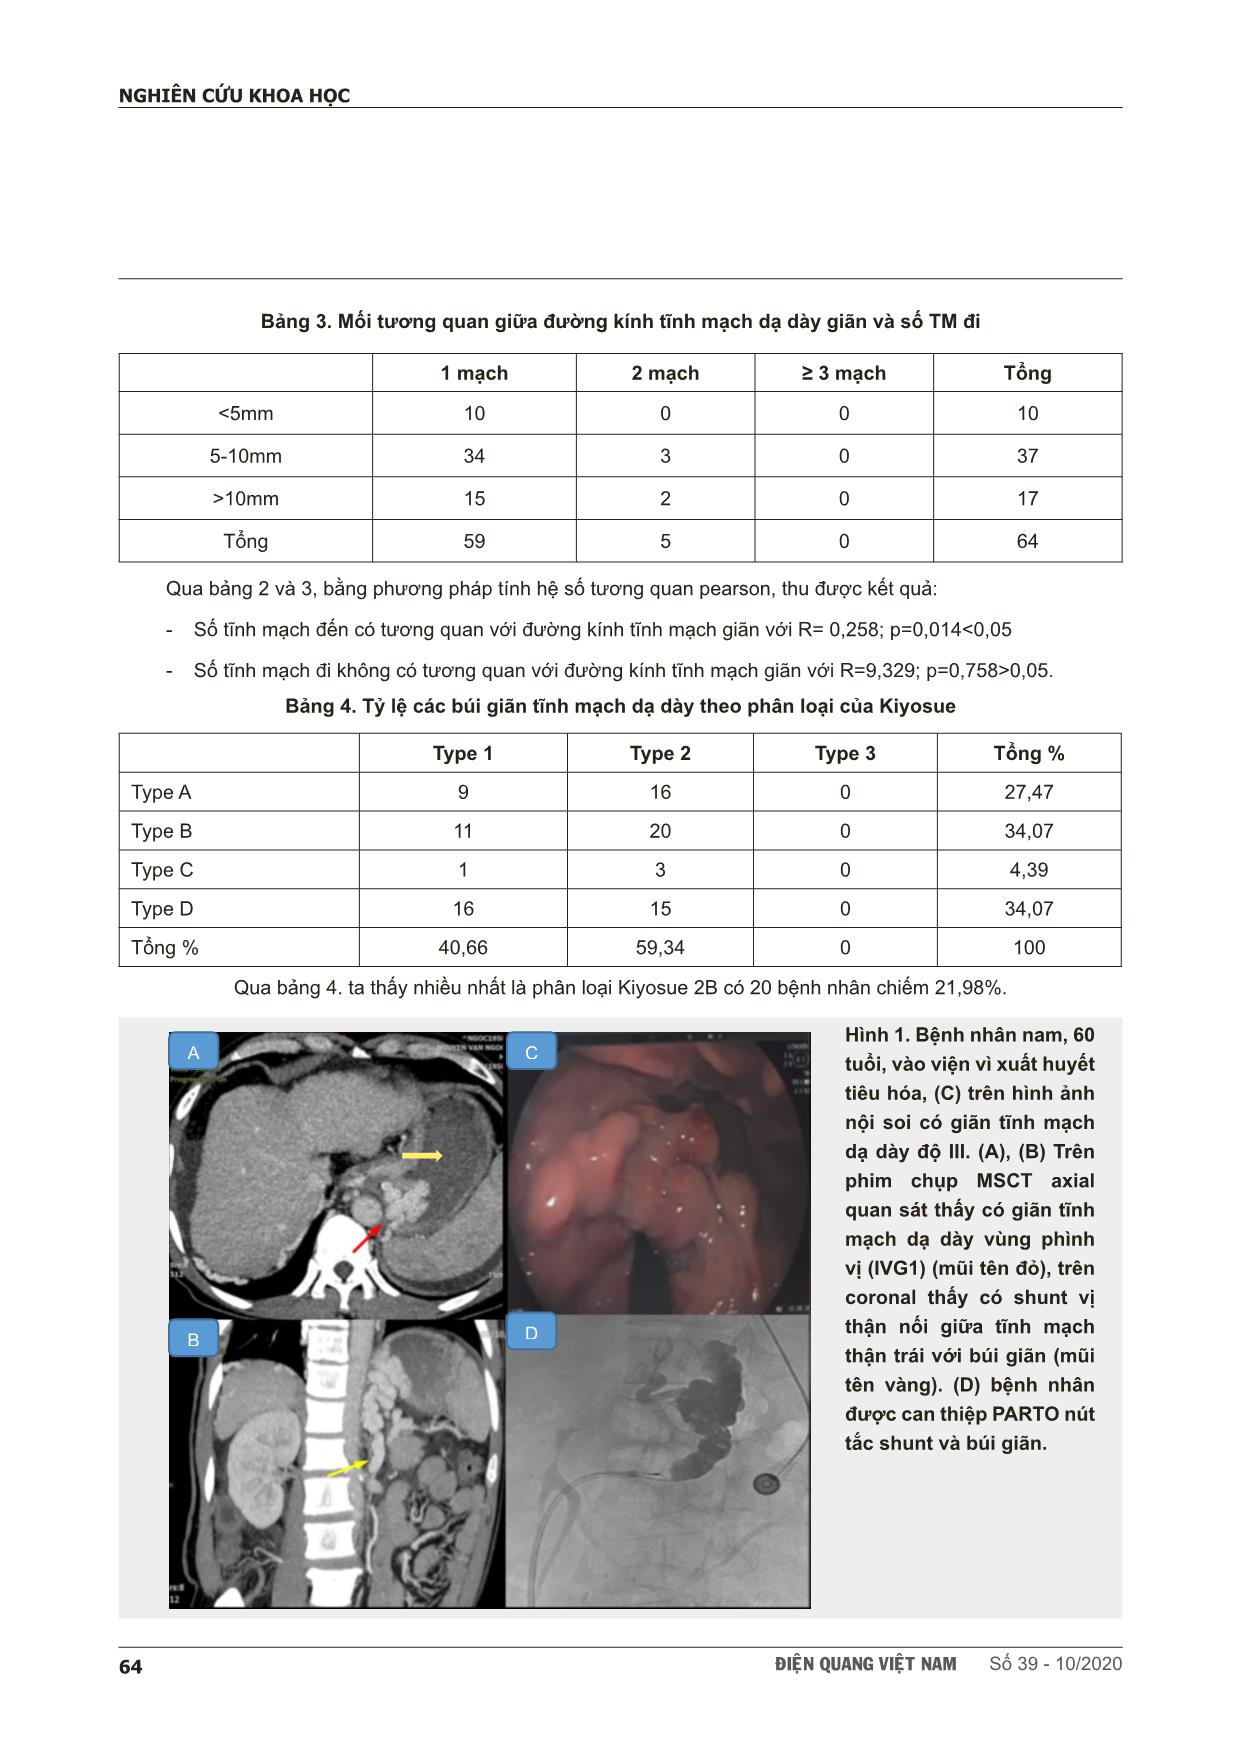 Nghiên cứu đặc điểm búi giãn tĩnh mạch dạ dày ở bệnh nhân xơ gan trên hình ảnh cắt lớp vi tính đa dãy để chỉ định can thiệp parto trang 4